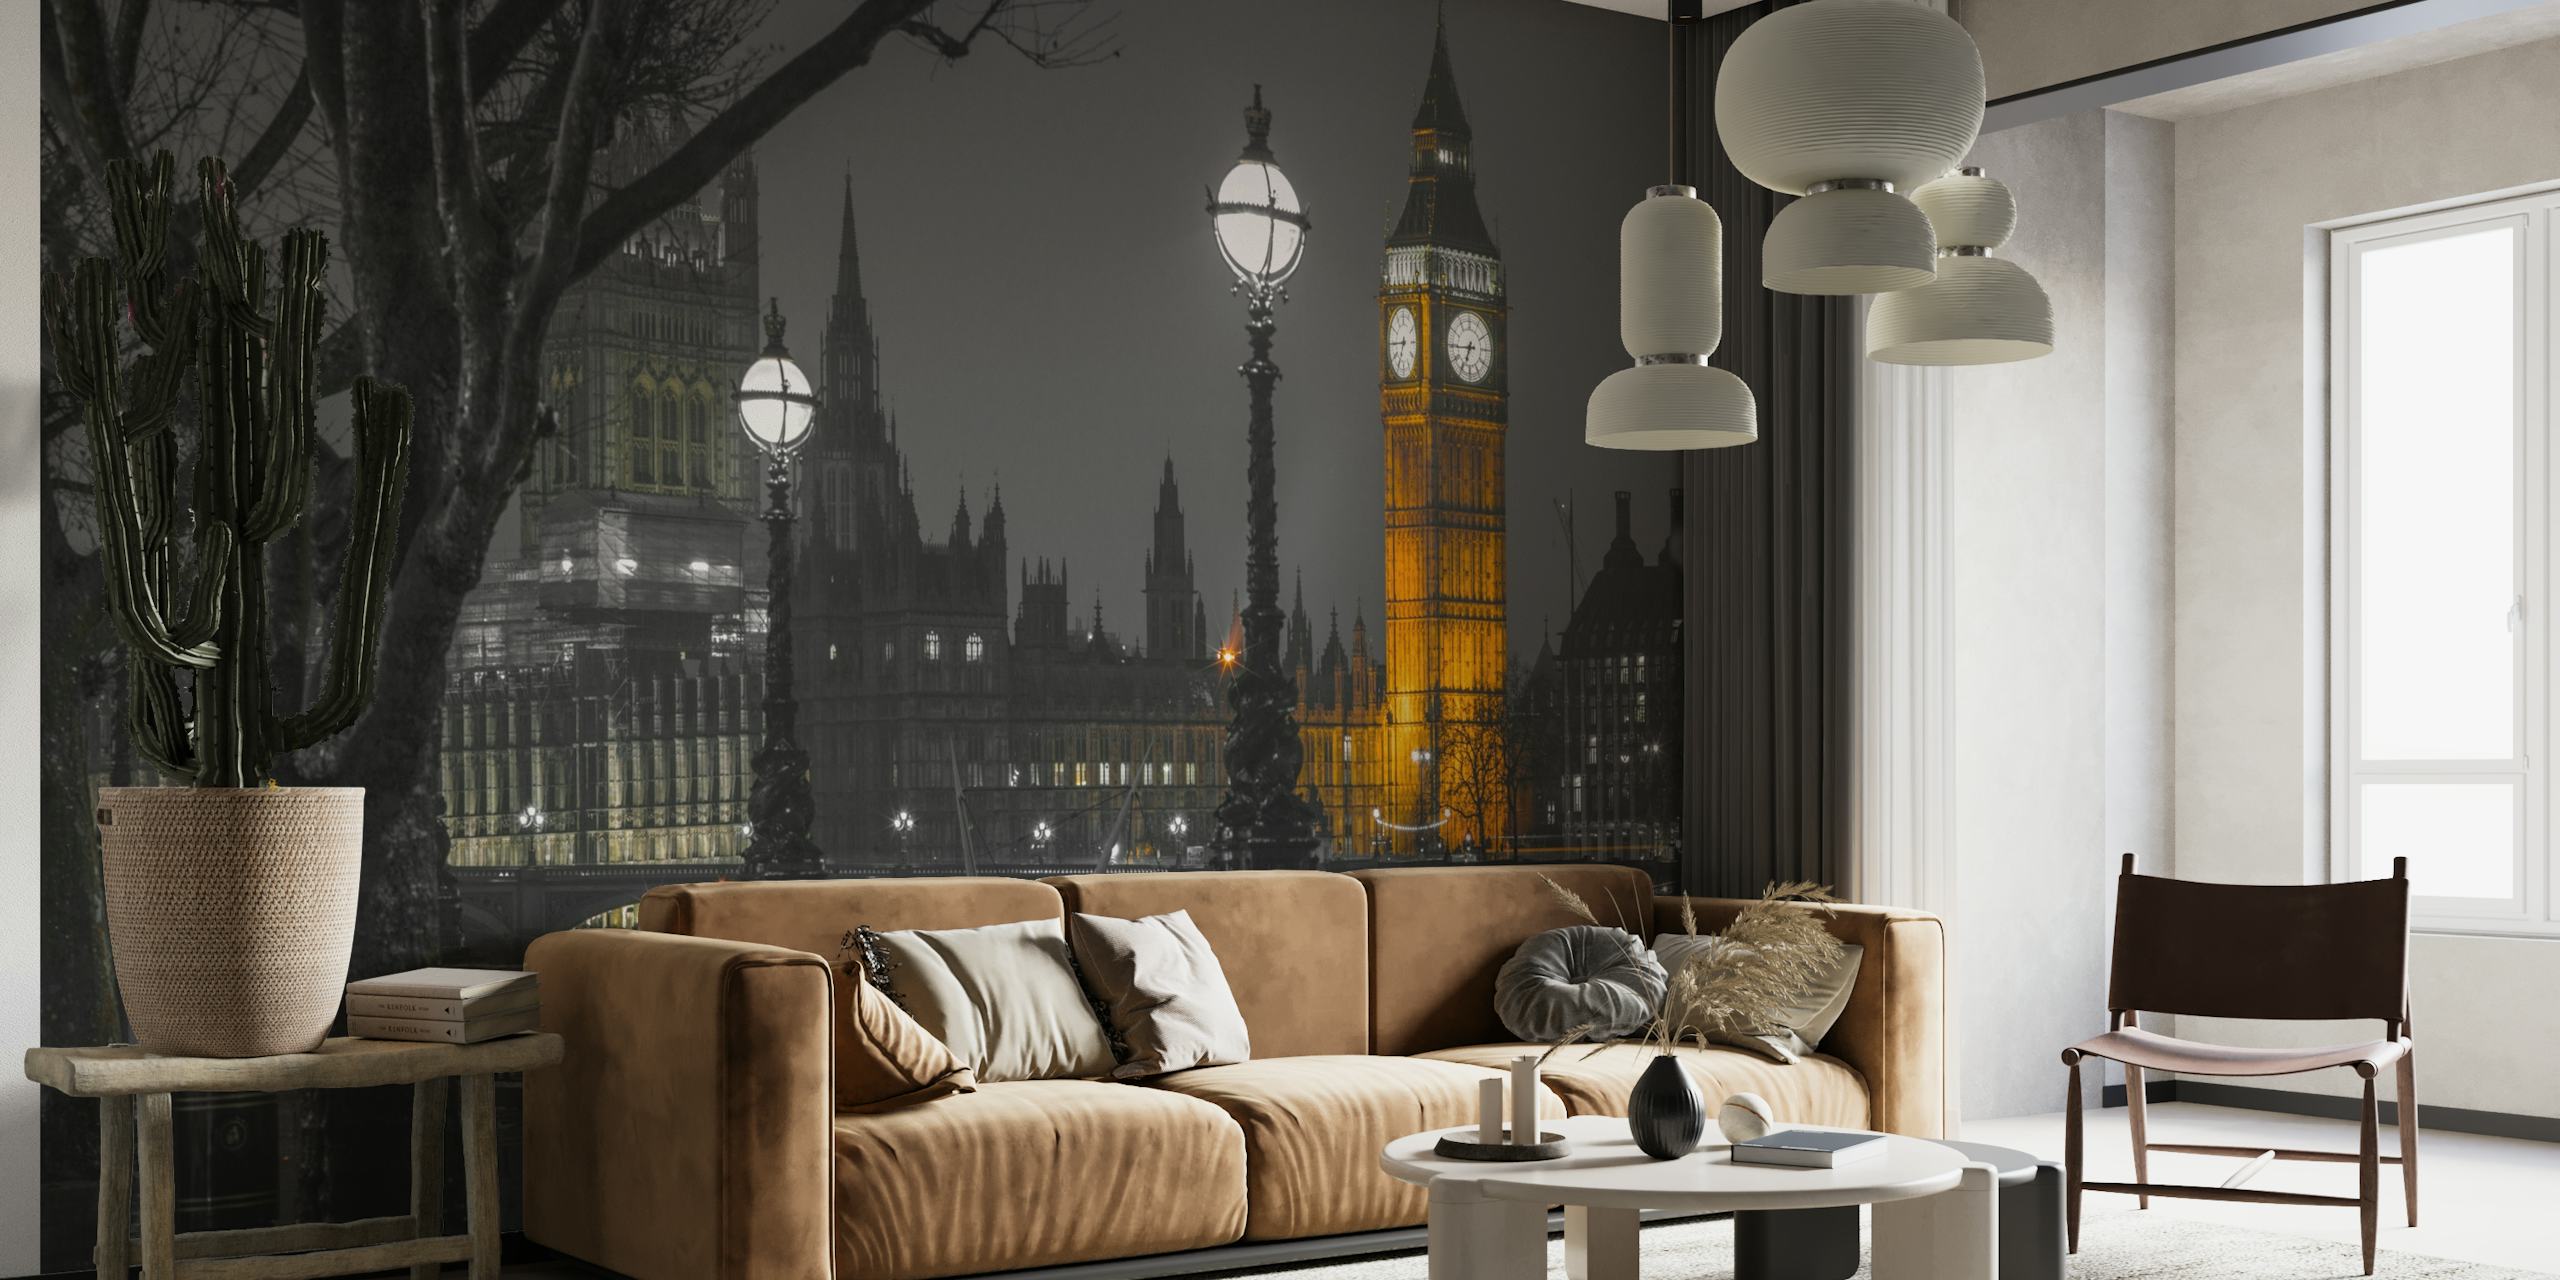 Carta murale in bianco e nero del paesaggio urbano di Londra al tramonto con la Elizabeth Tower illuminata